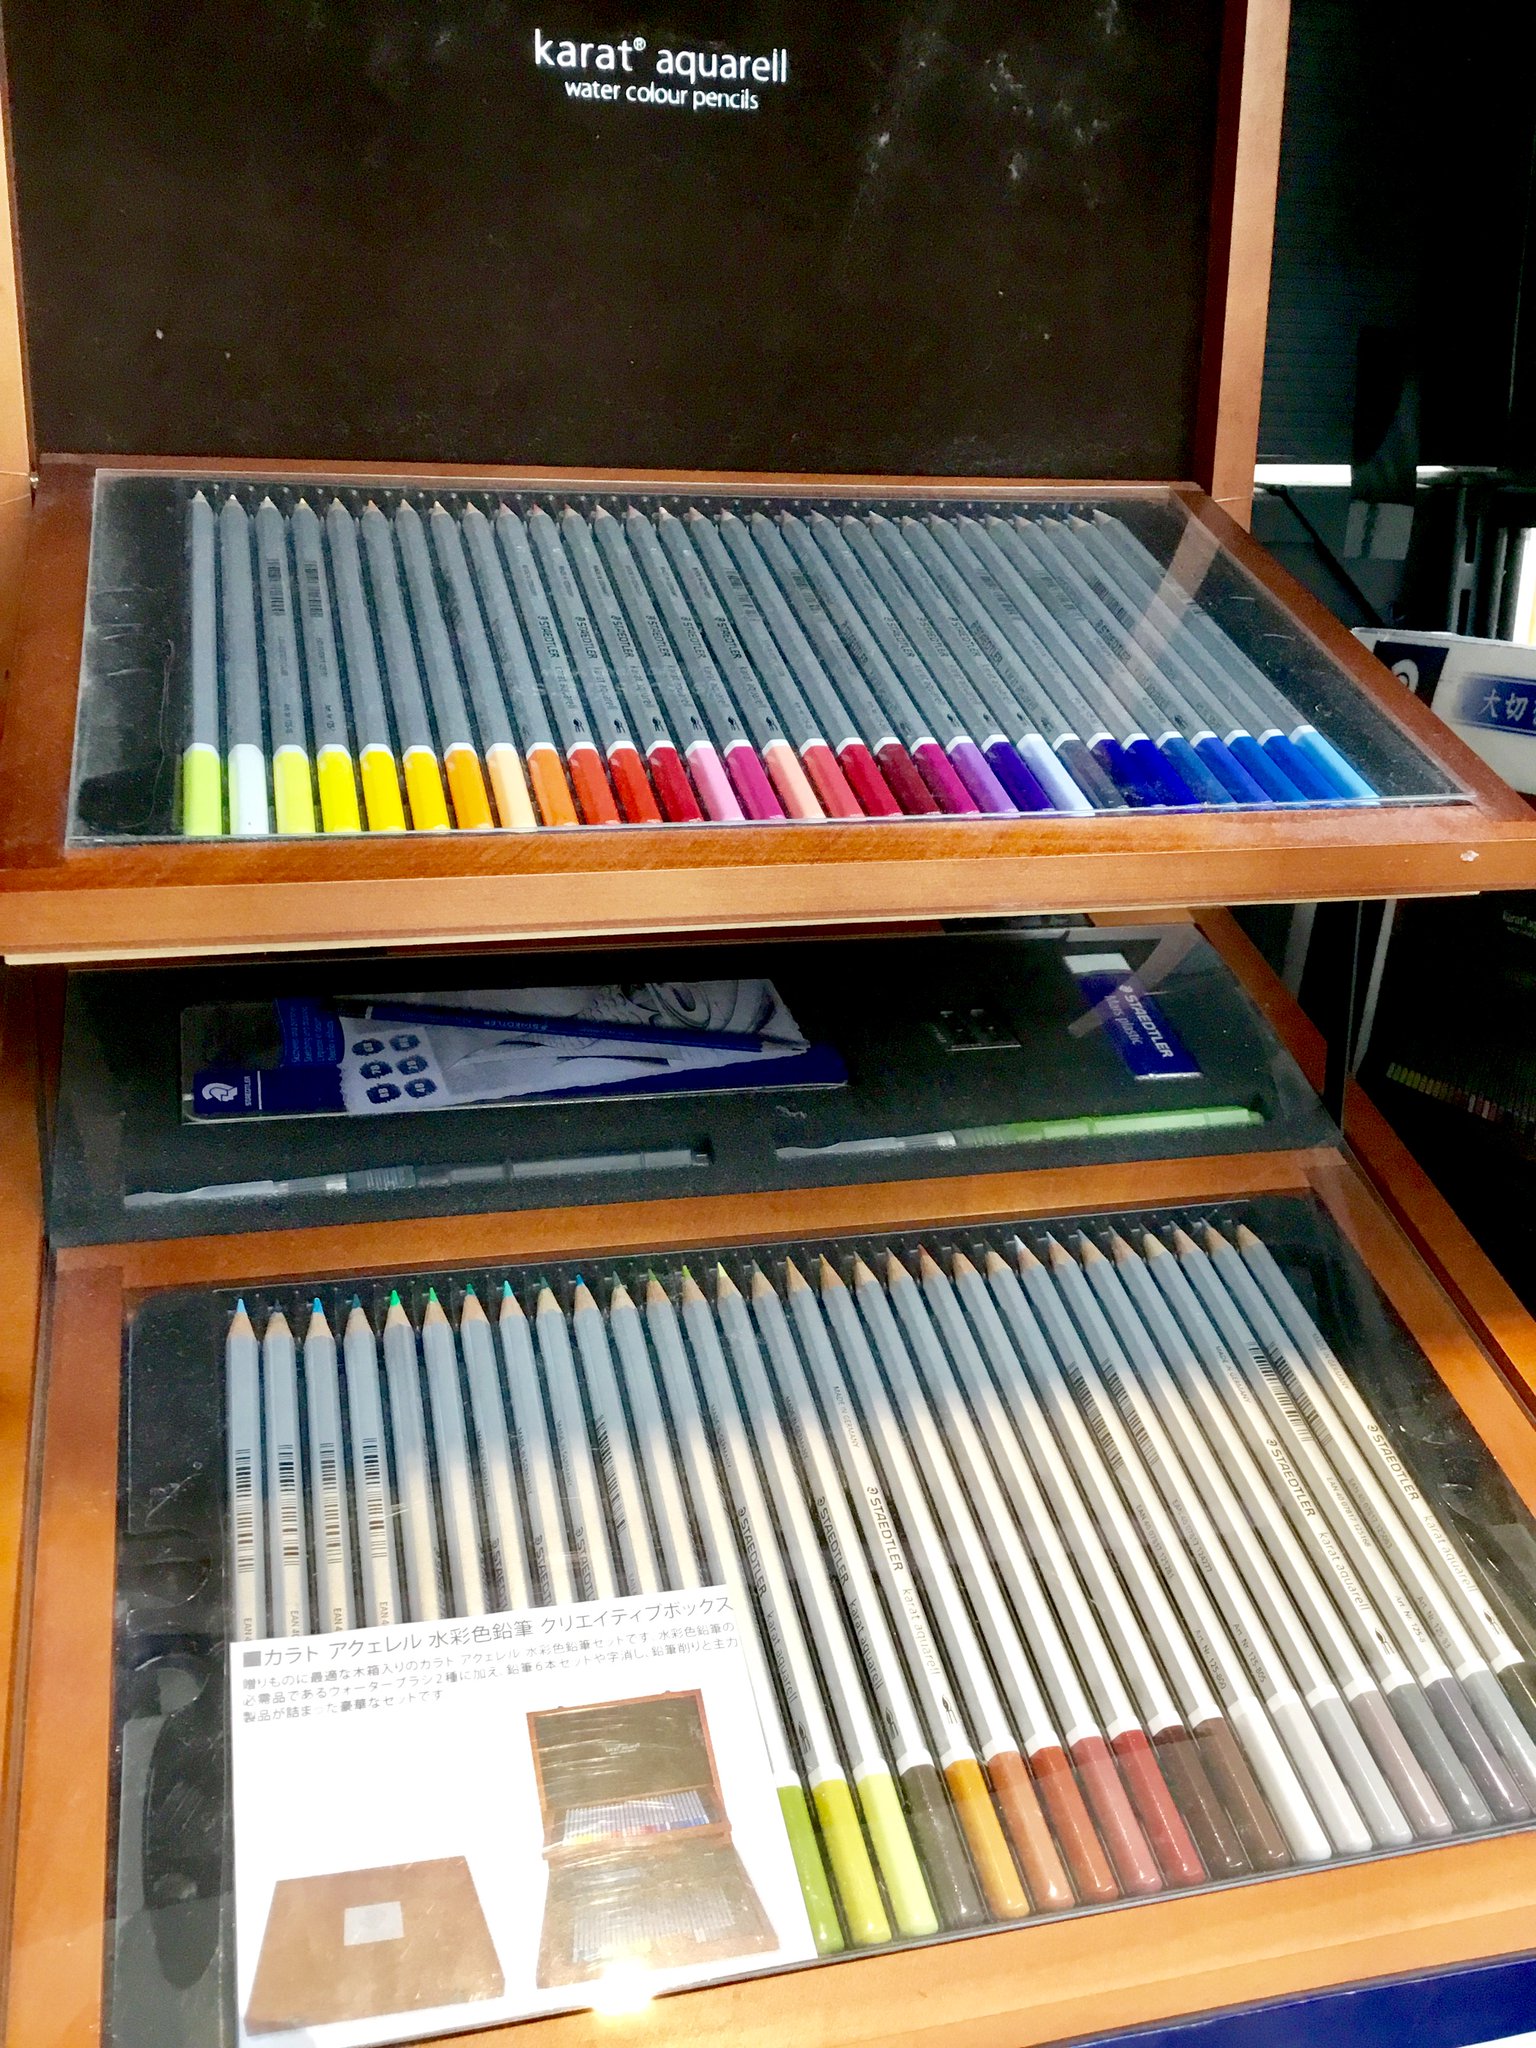 Karat aquarell水彩色鉛筆クリエイティブBOX - 画材